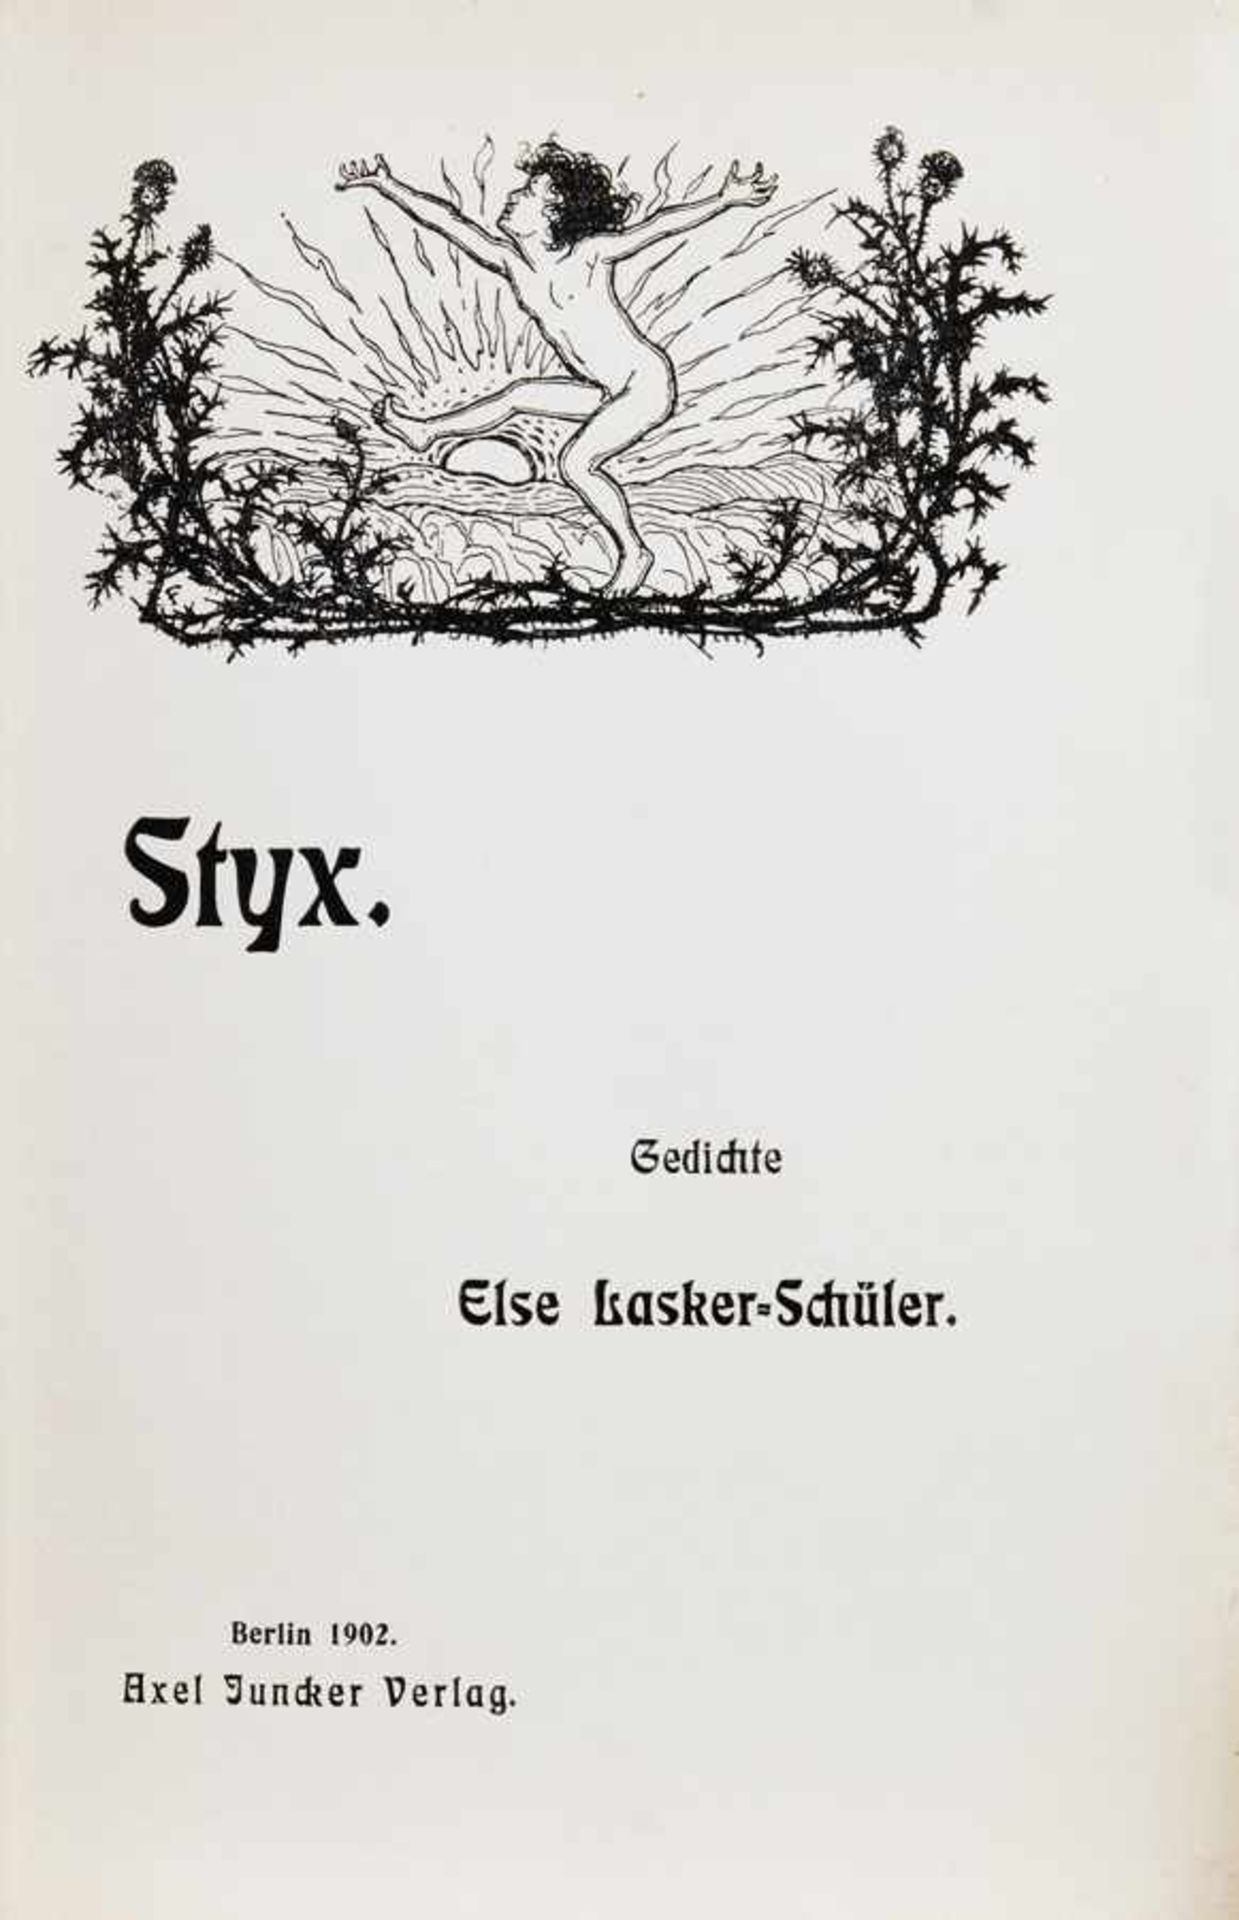 Else Lasker-Schüler. Styx. Gedichte. Berlin, Axel Juncker 1902. Mit einer Titelvignette von Fidus.